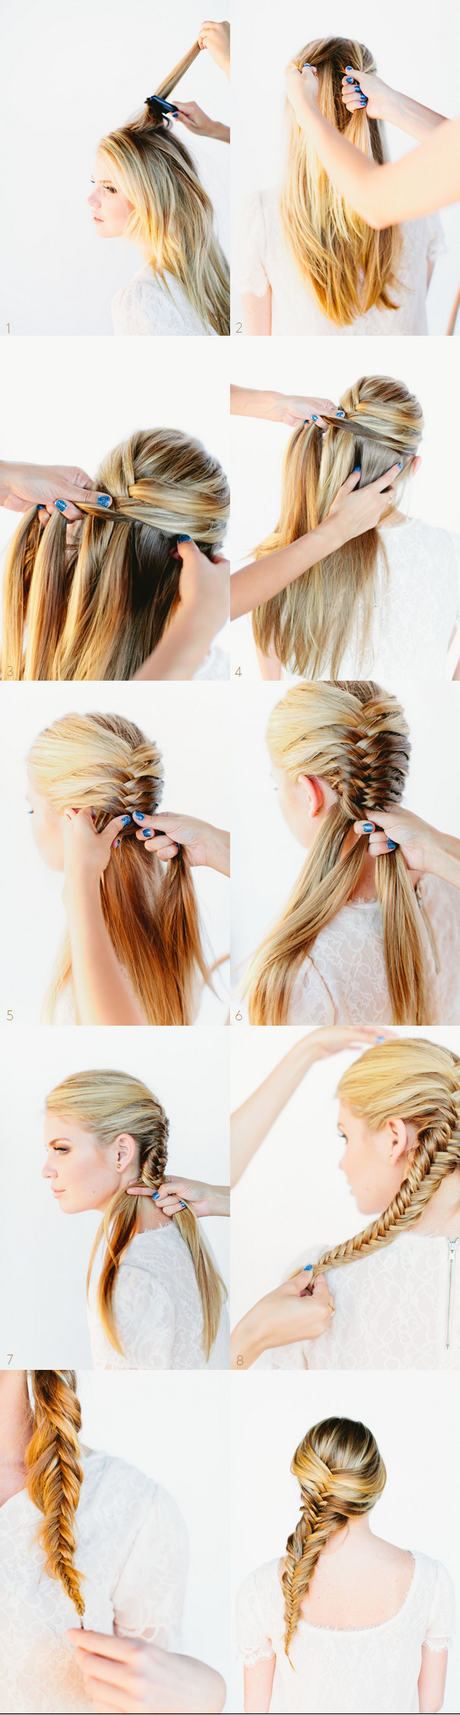 hair-braid-tutorials-22 Hair braid tutorials